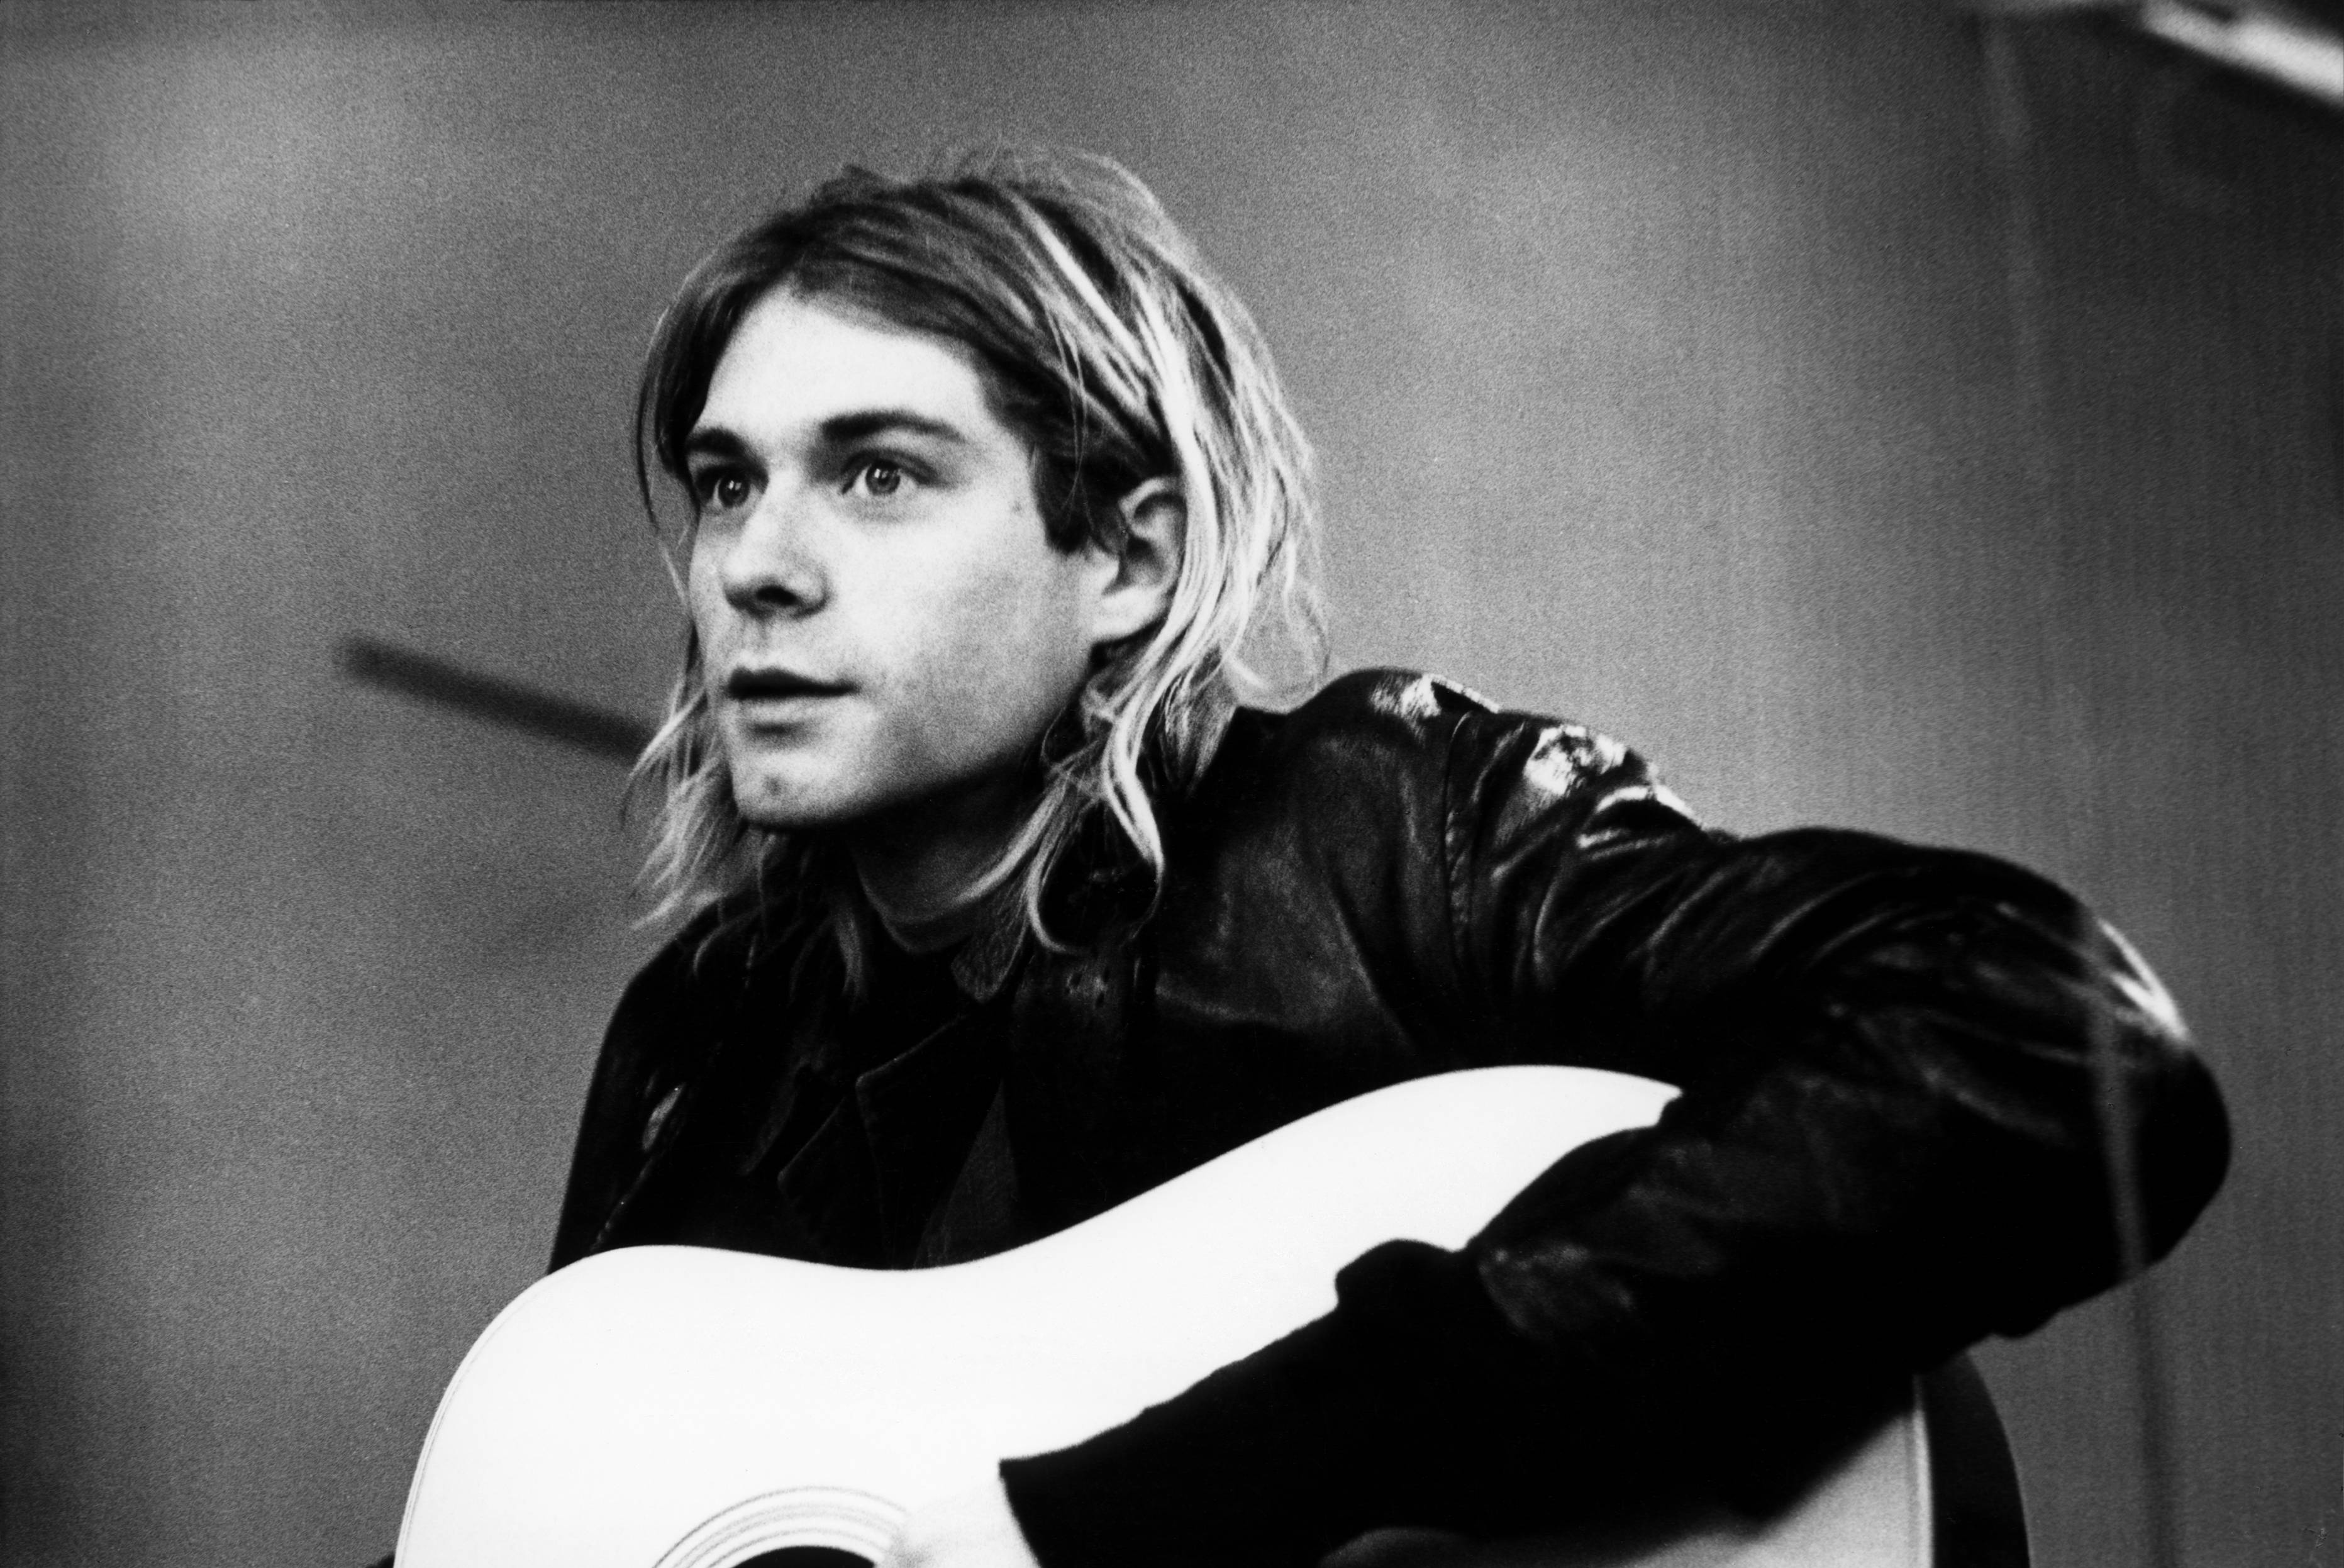 Kurt Cobain is recording in Hilversum Studios in Hilversum, Netherlands on Nov. 25, 1991.